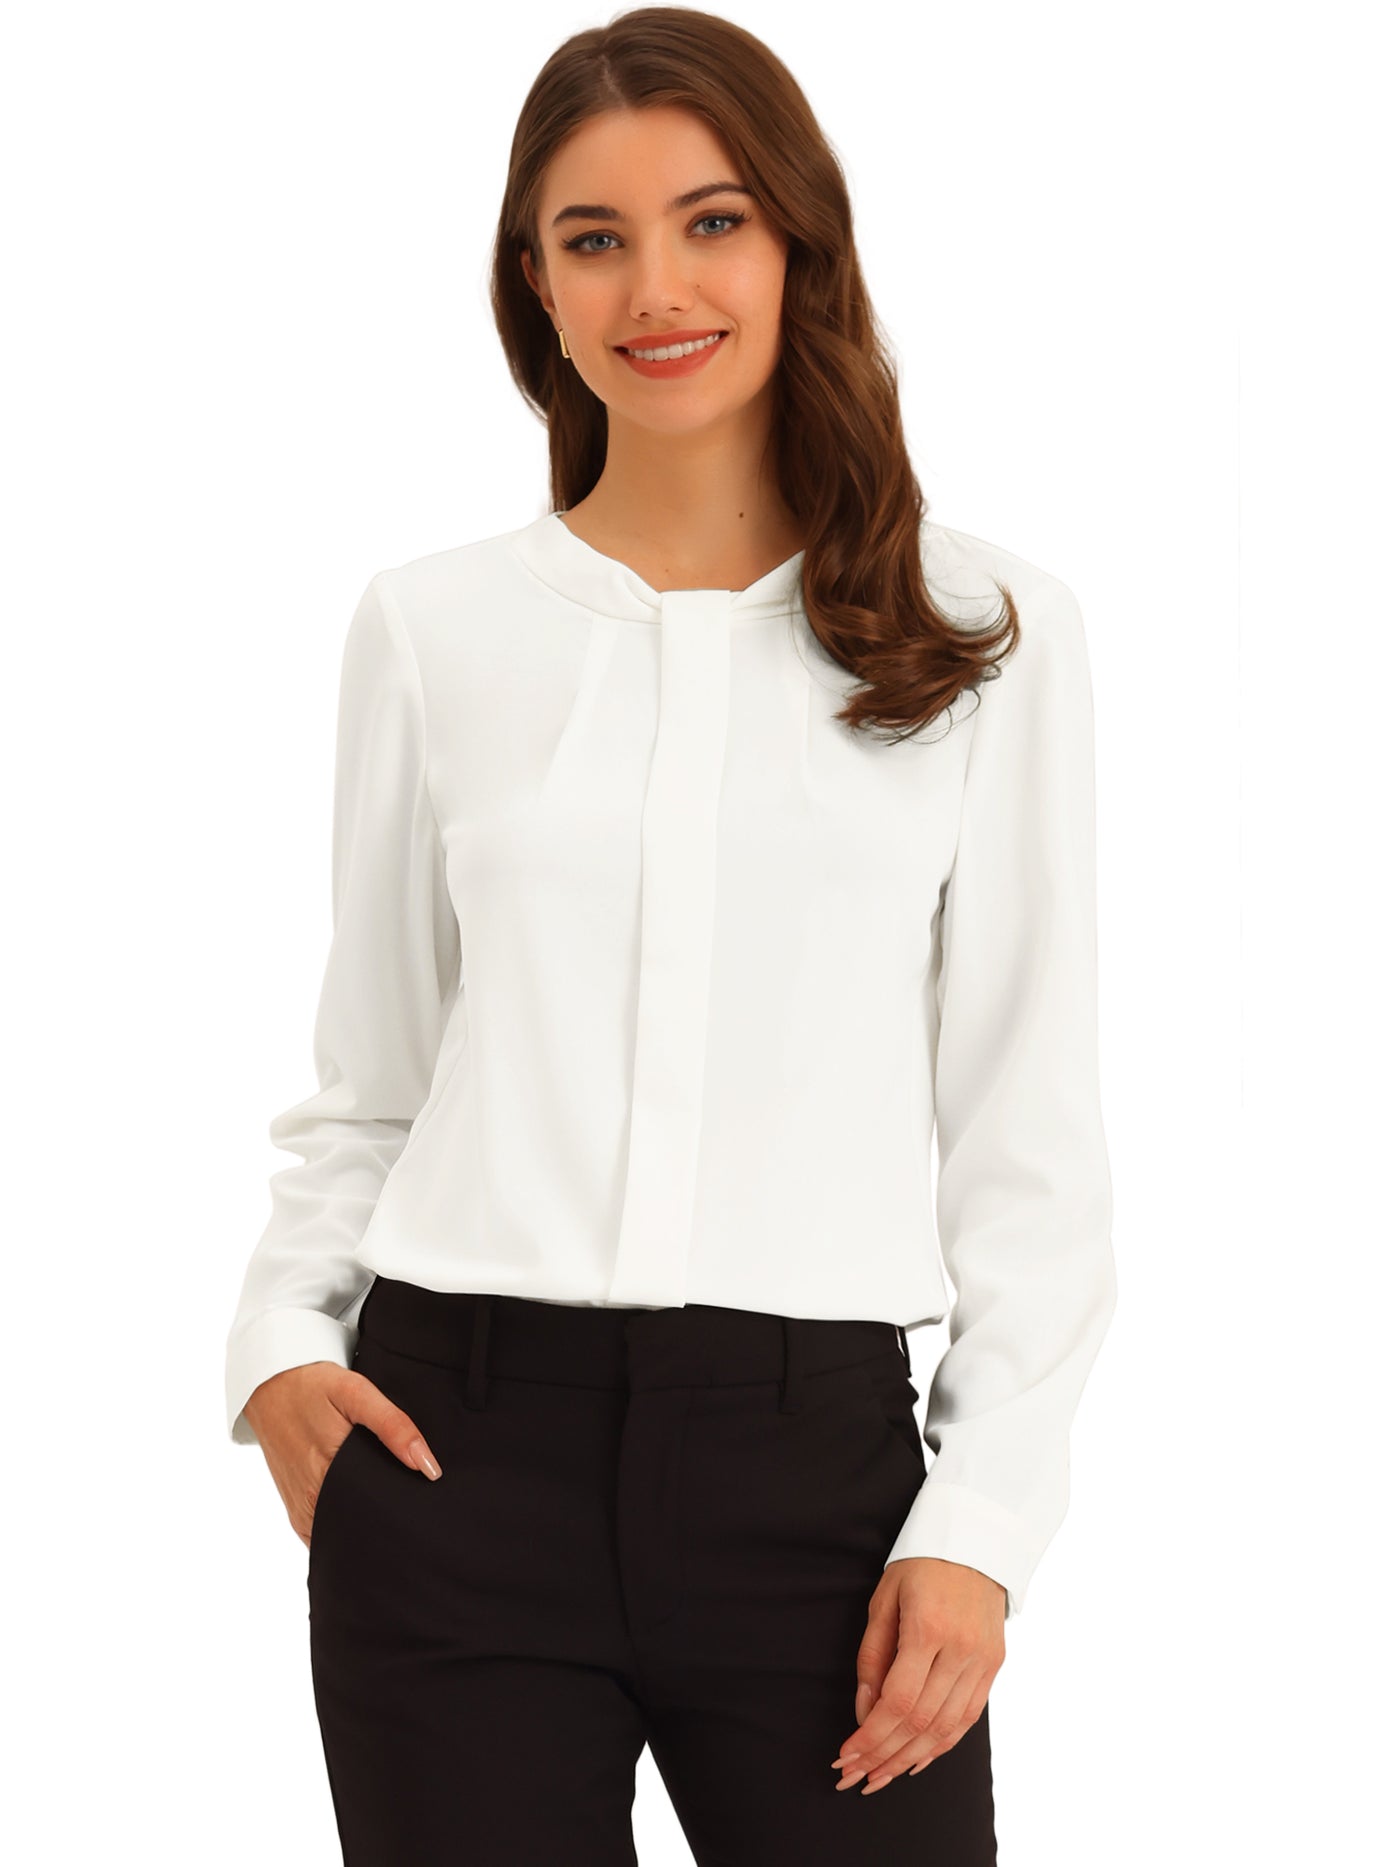 Allegra K Work Shirt Long Sleeve Business Casual Tops